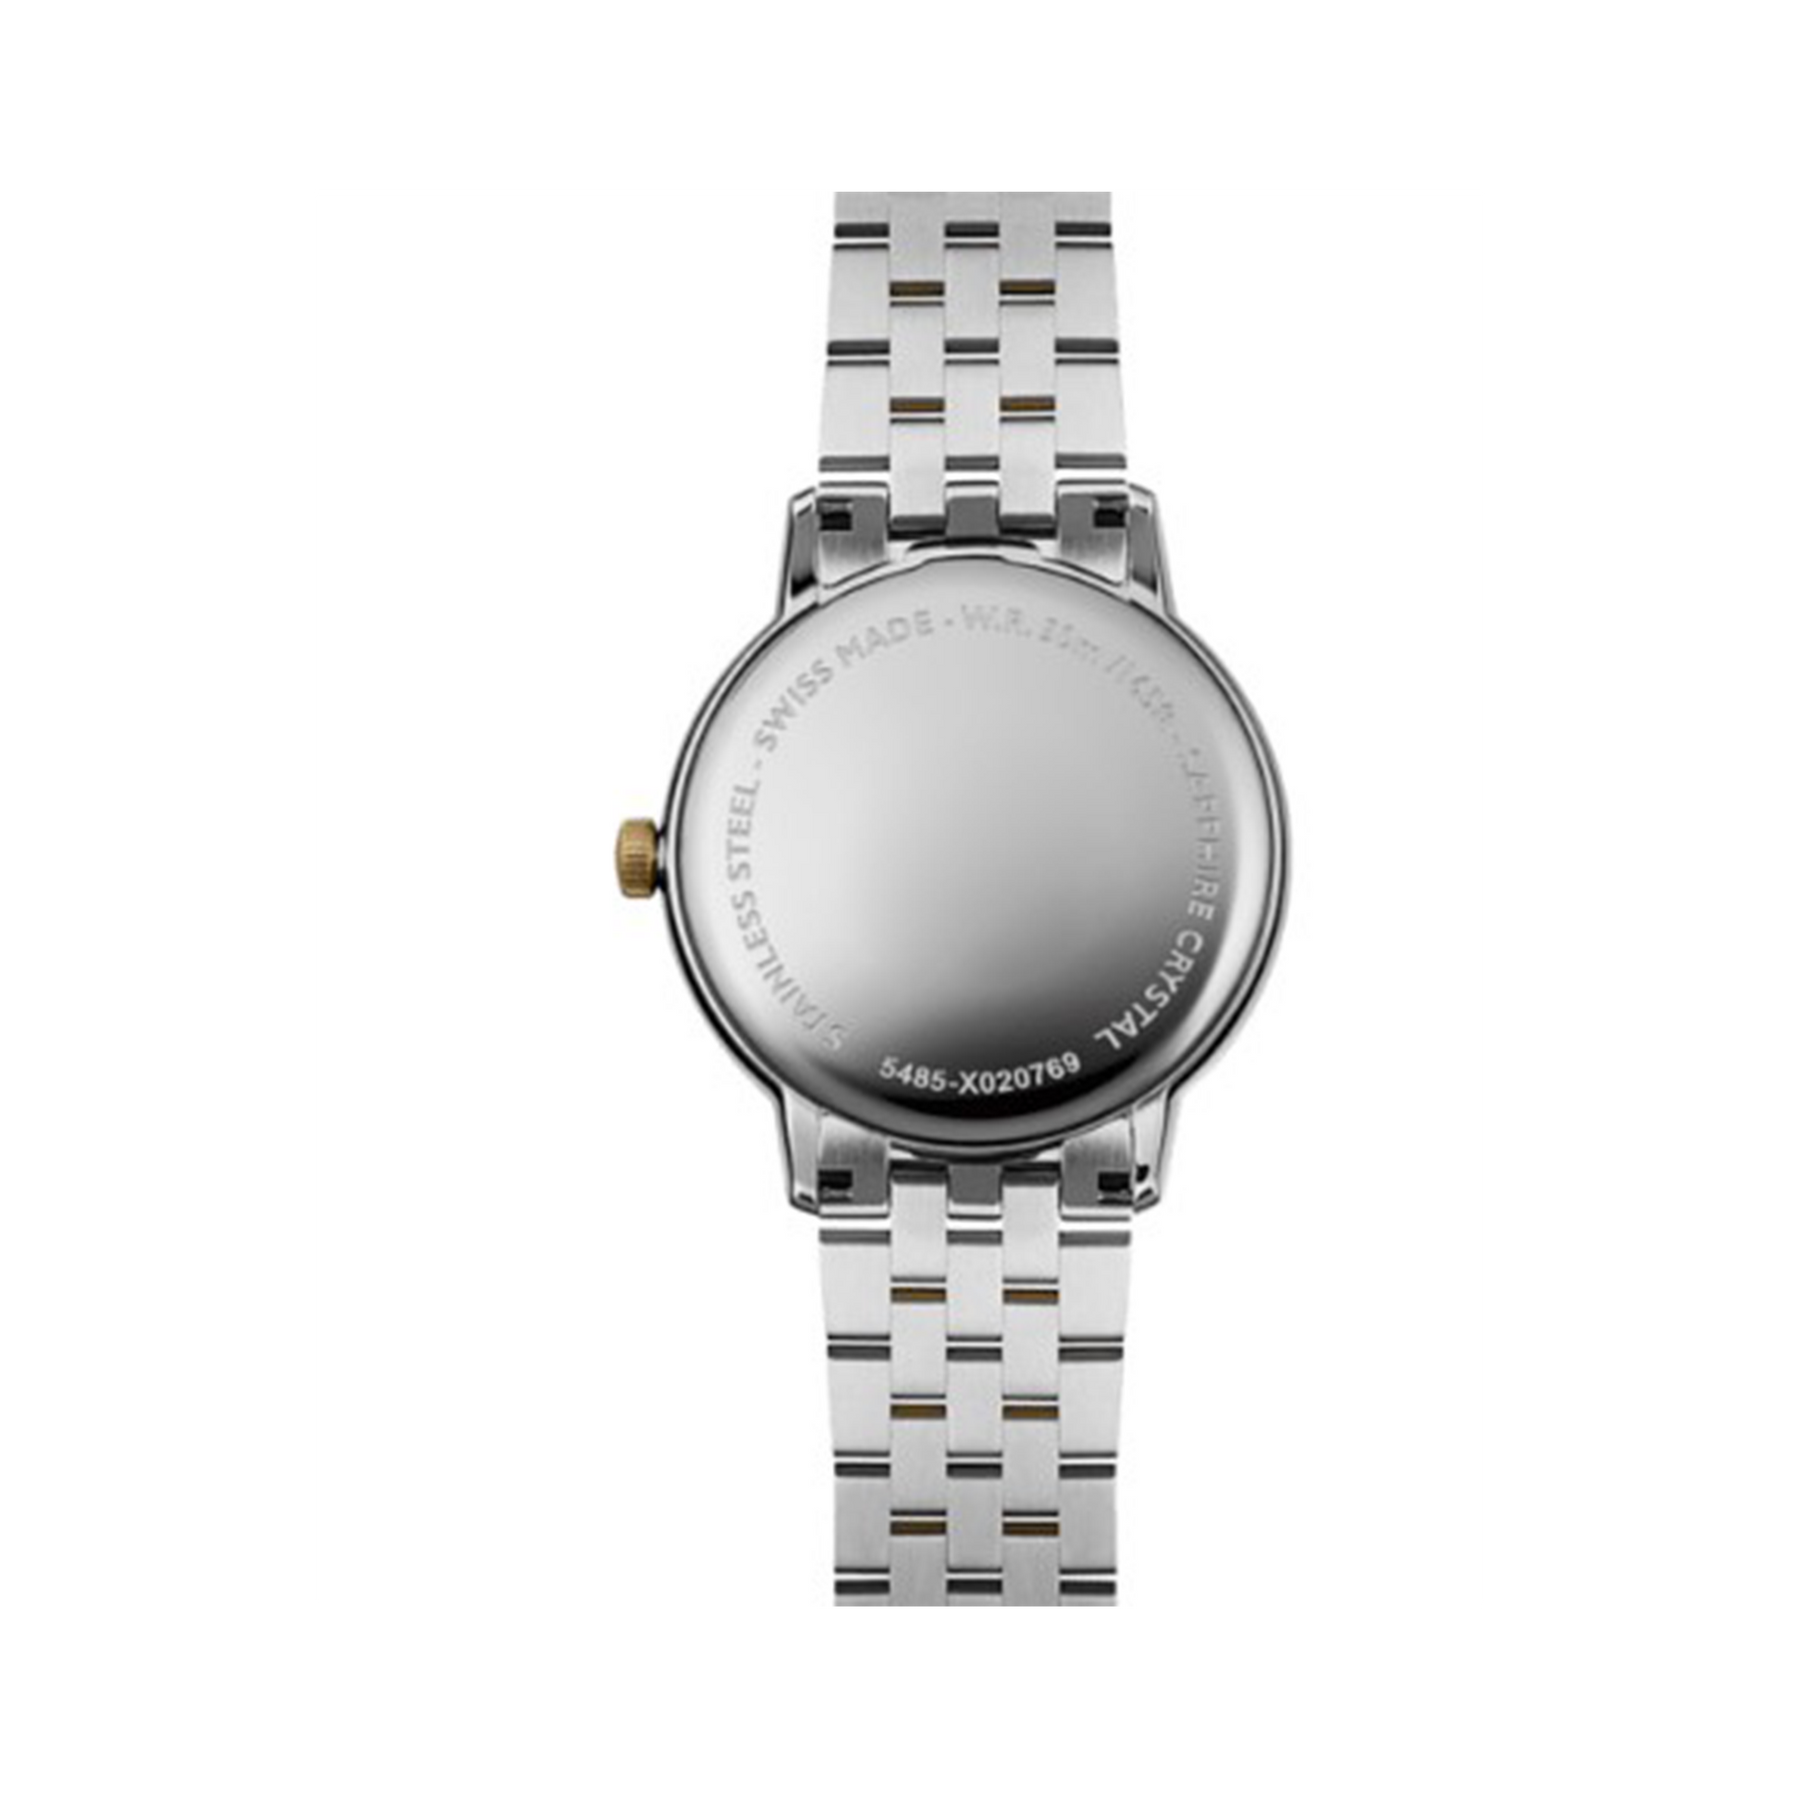 Raymond Weil Men’s 39mm Quartz Watch 5485-STP-00359